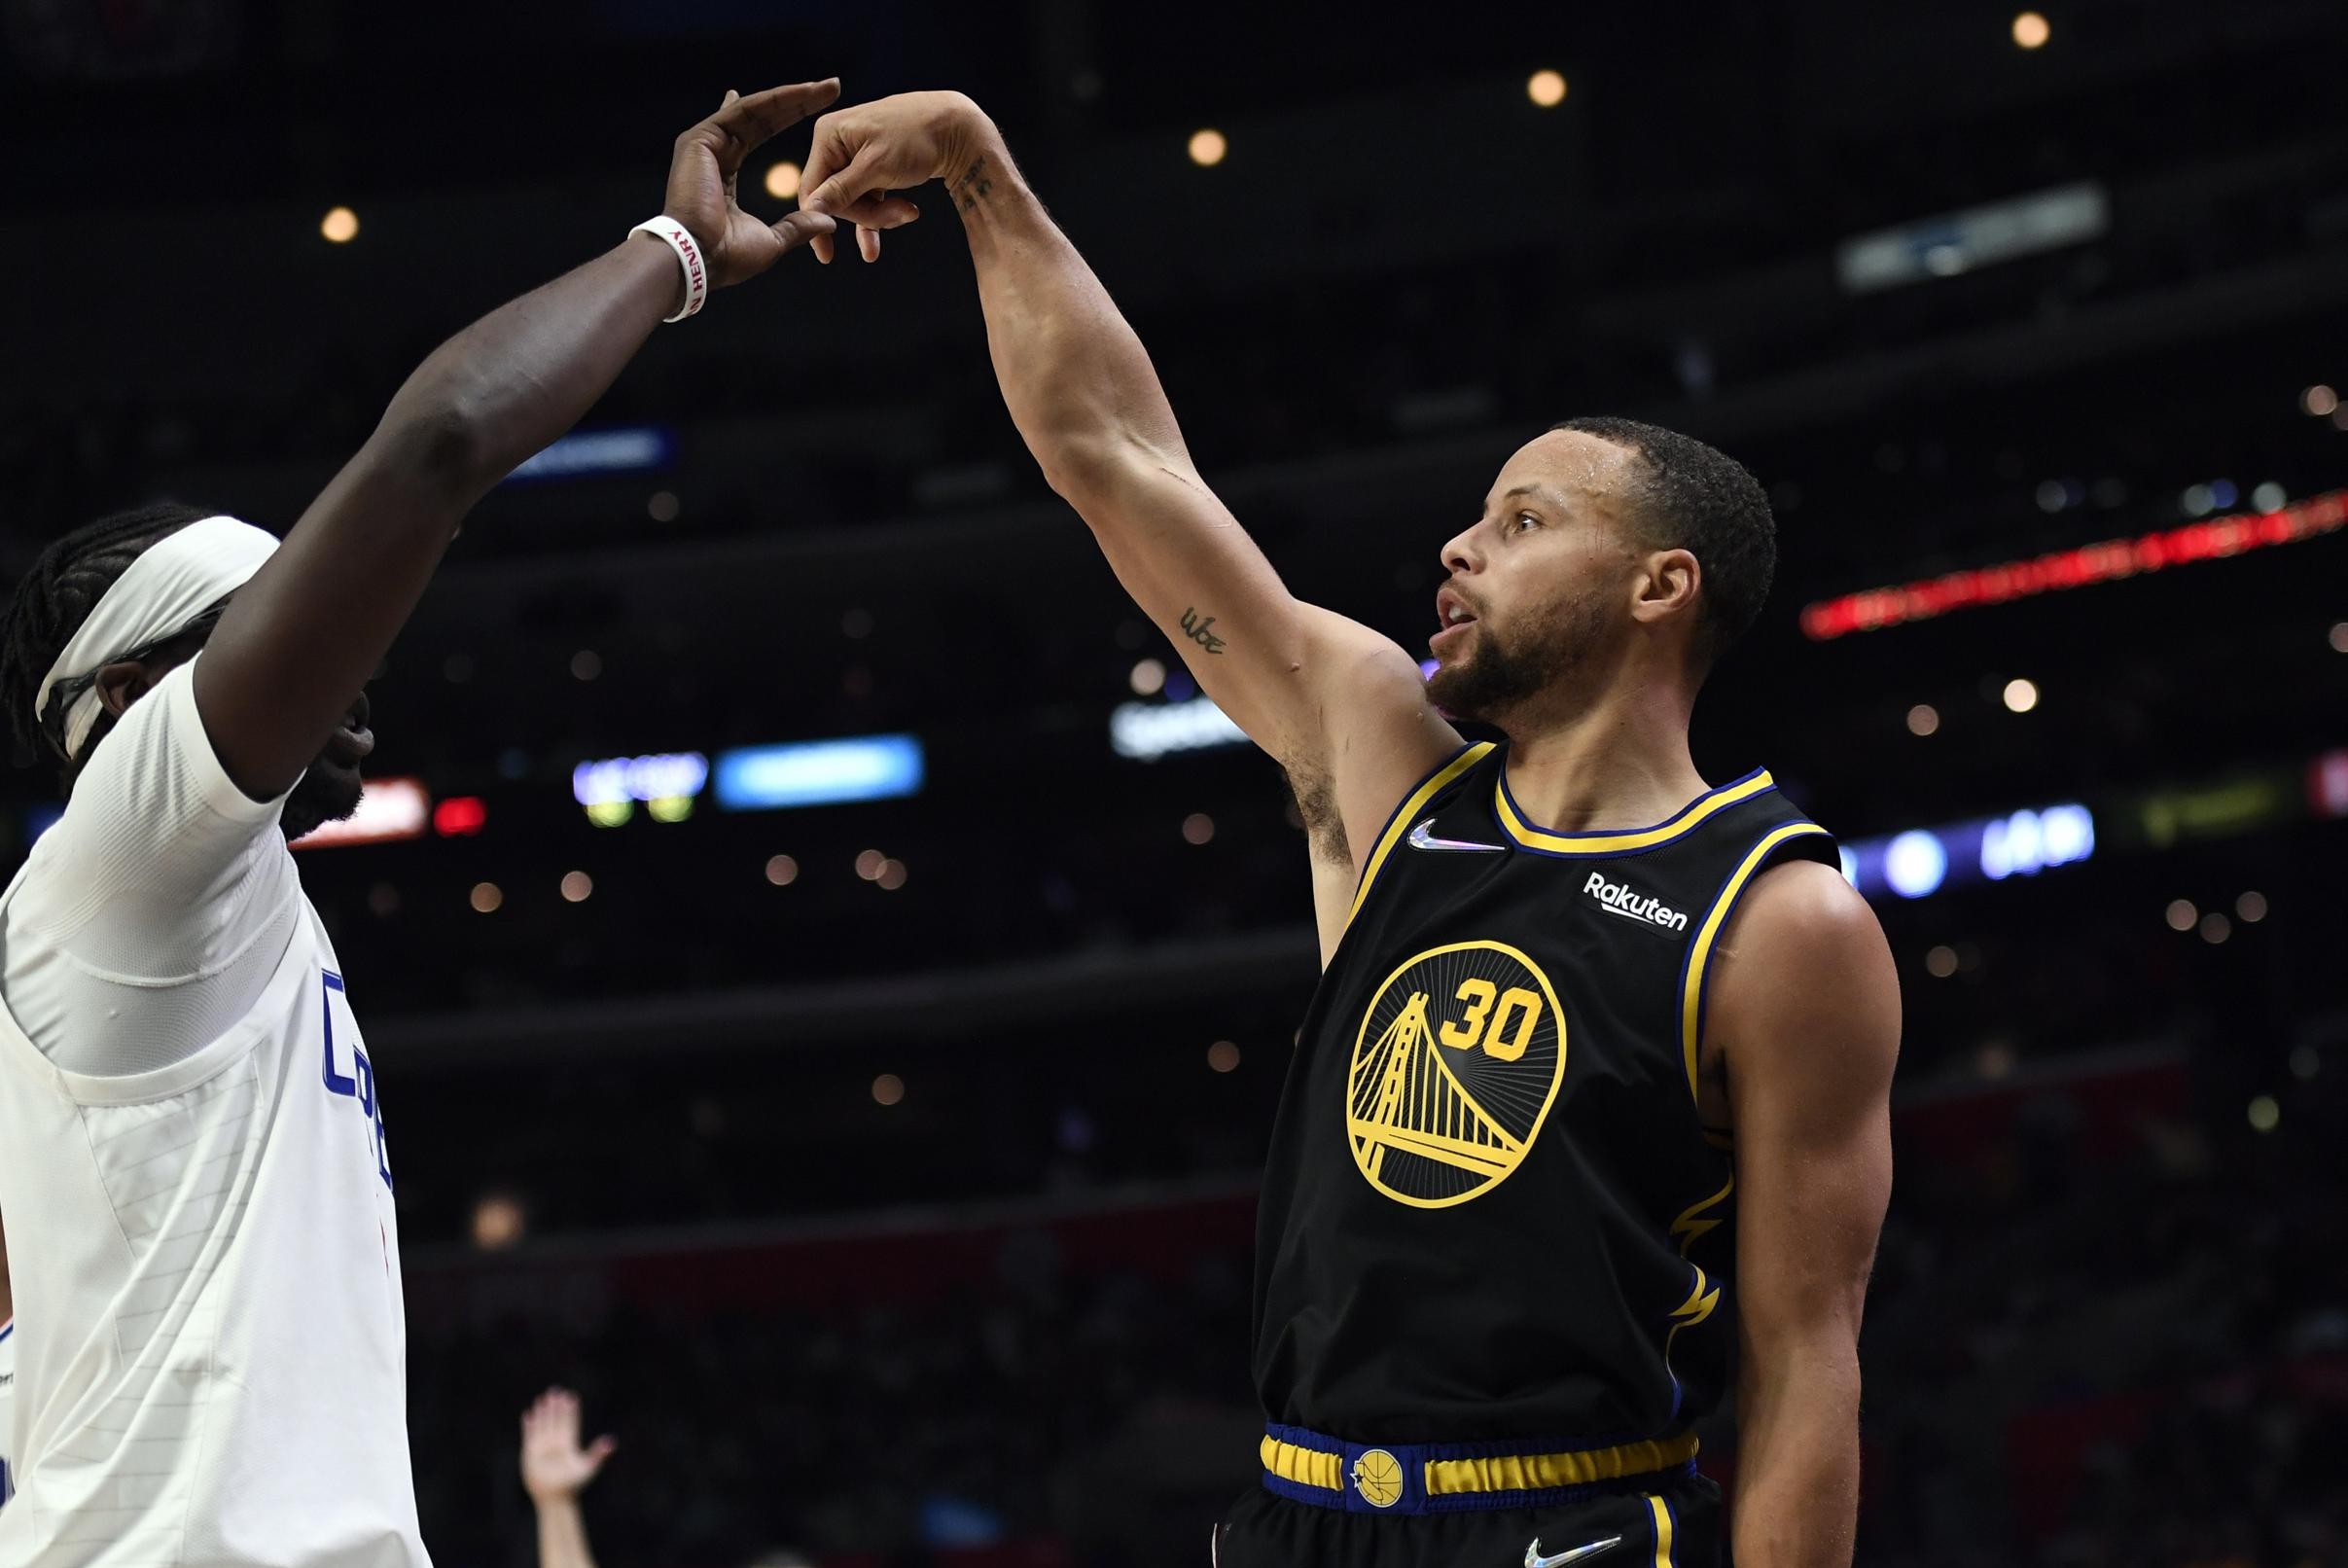 Stephen Curry leidt Golden State naar winst bij Clippers met zeven driepunters, LA Lakers zetten Detroit opzij in NBA